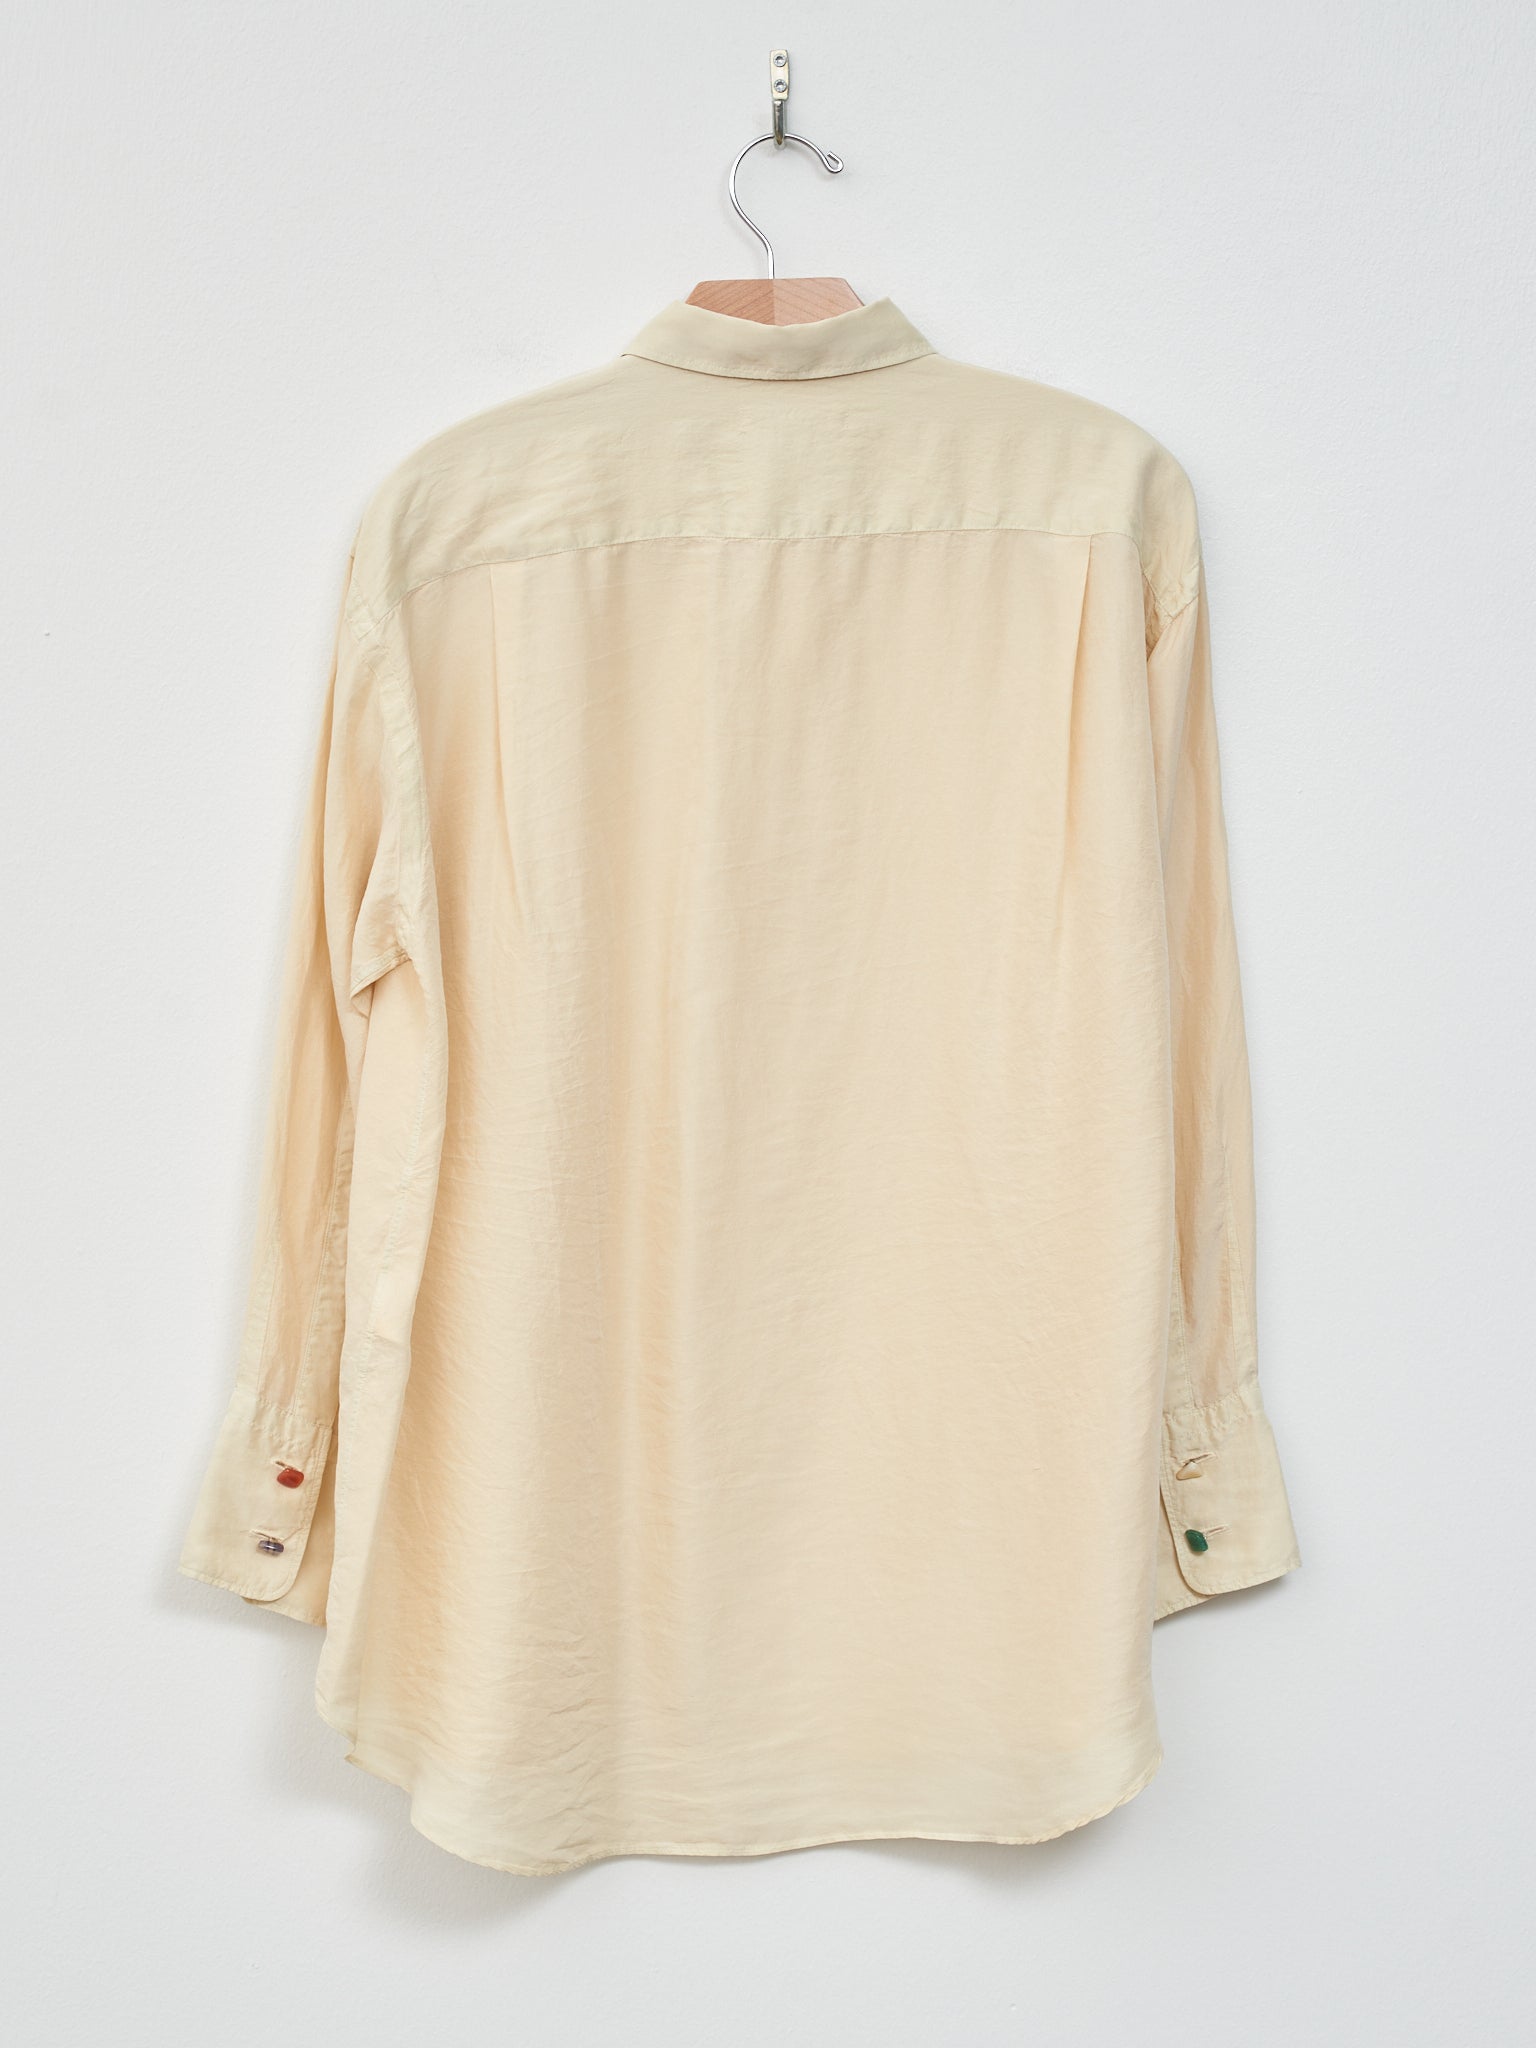 Namu Shop - Unfil Silk Habotai Oversized Shirt - Butter